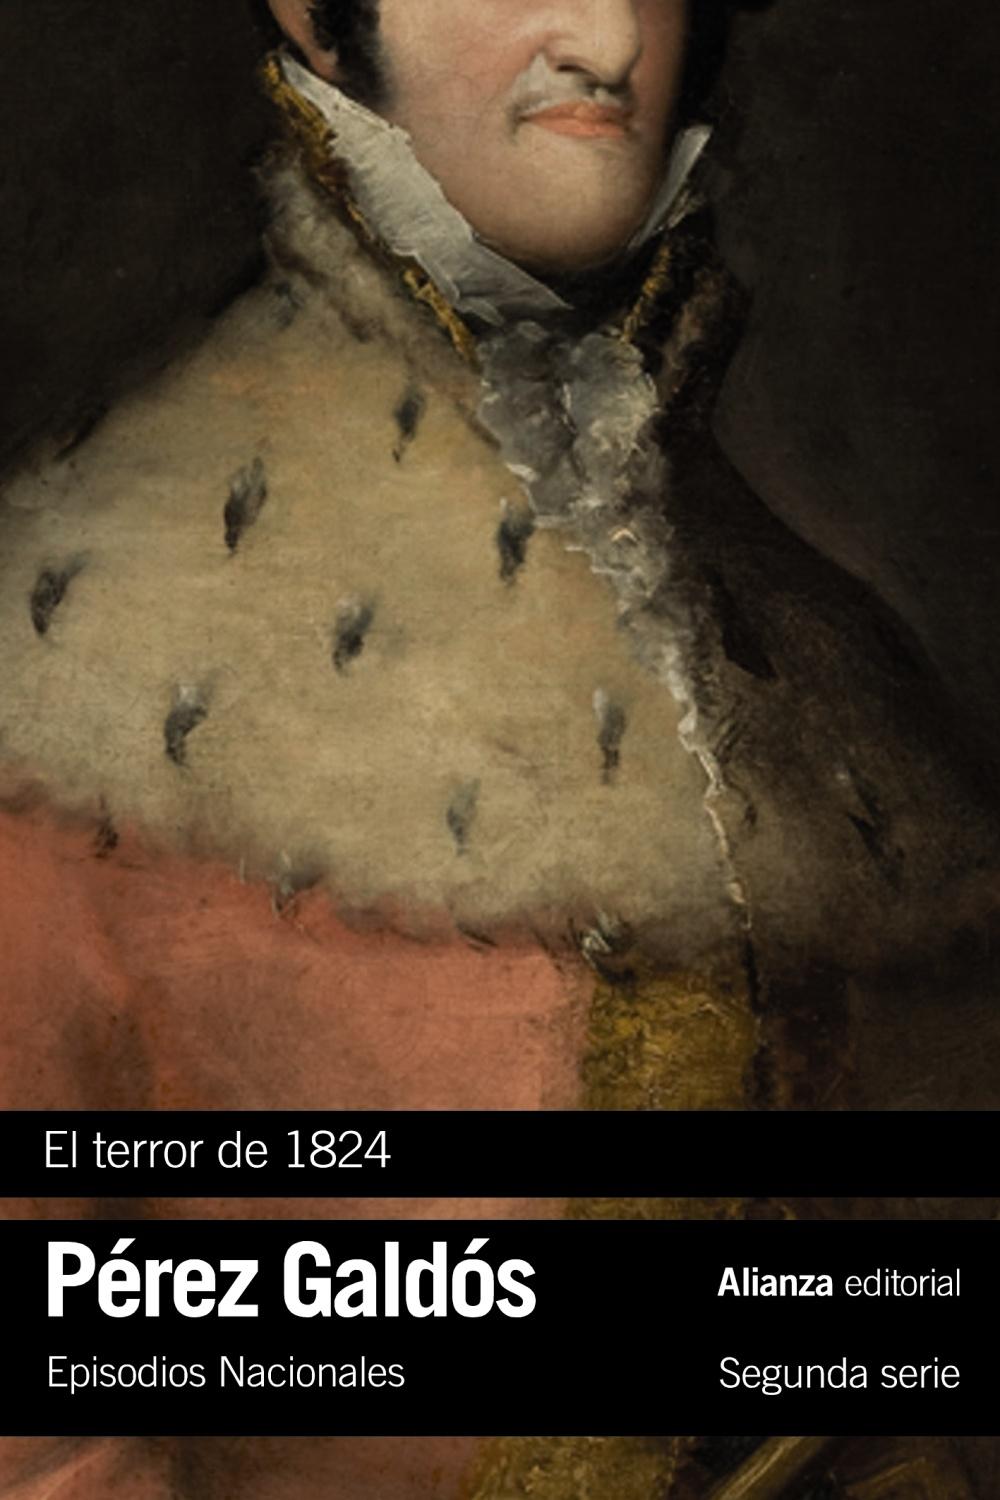 El terror de 1824 "Episodios Nacionales, 17 / Segunda serie". 